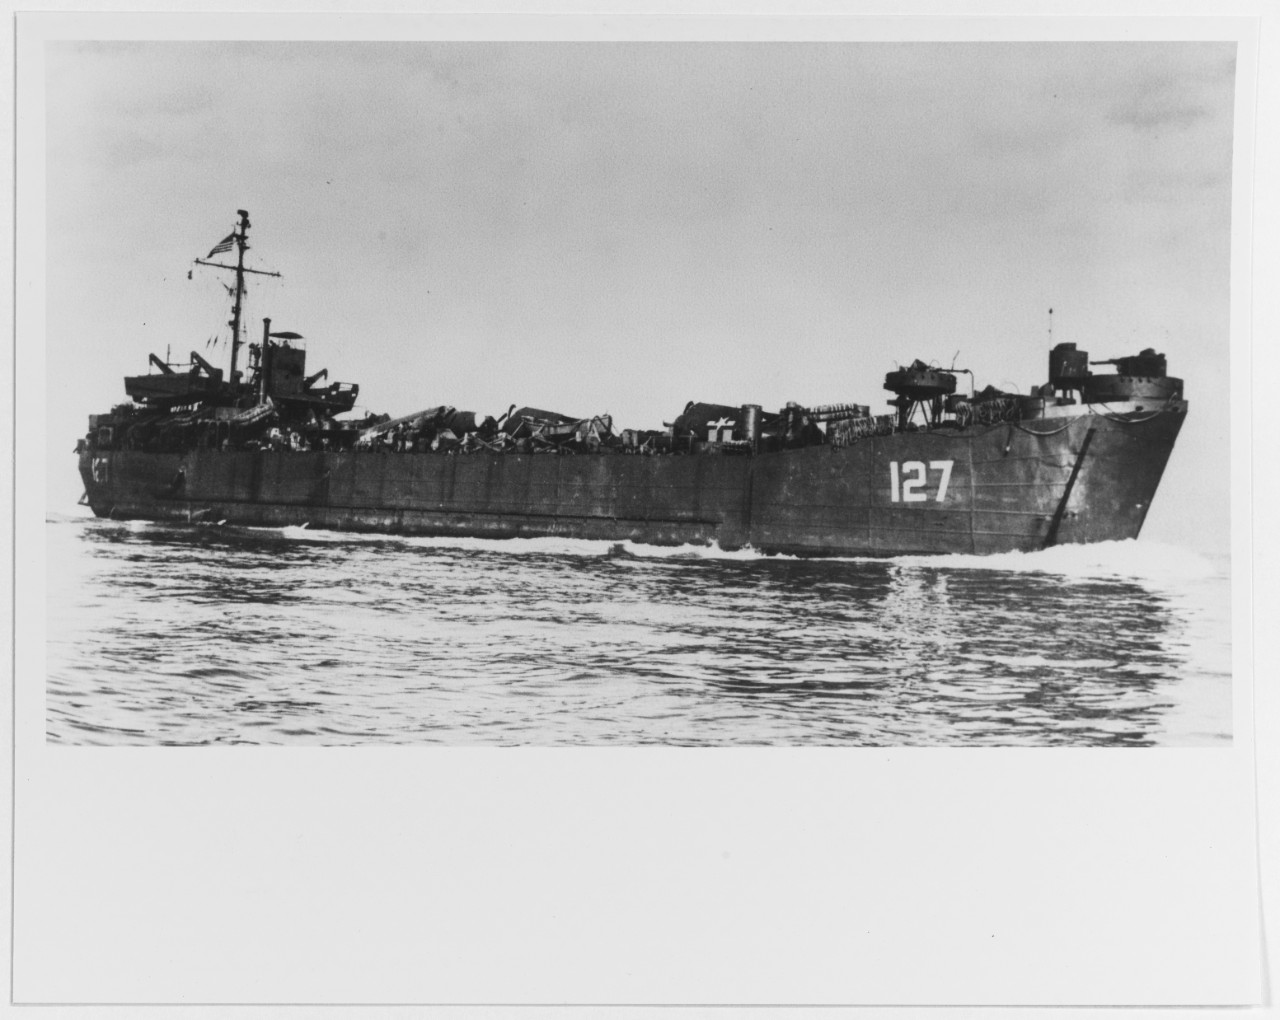 USS LST-127